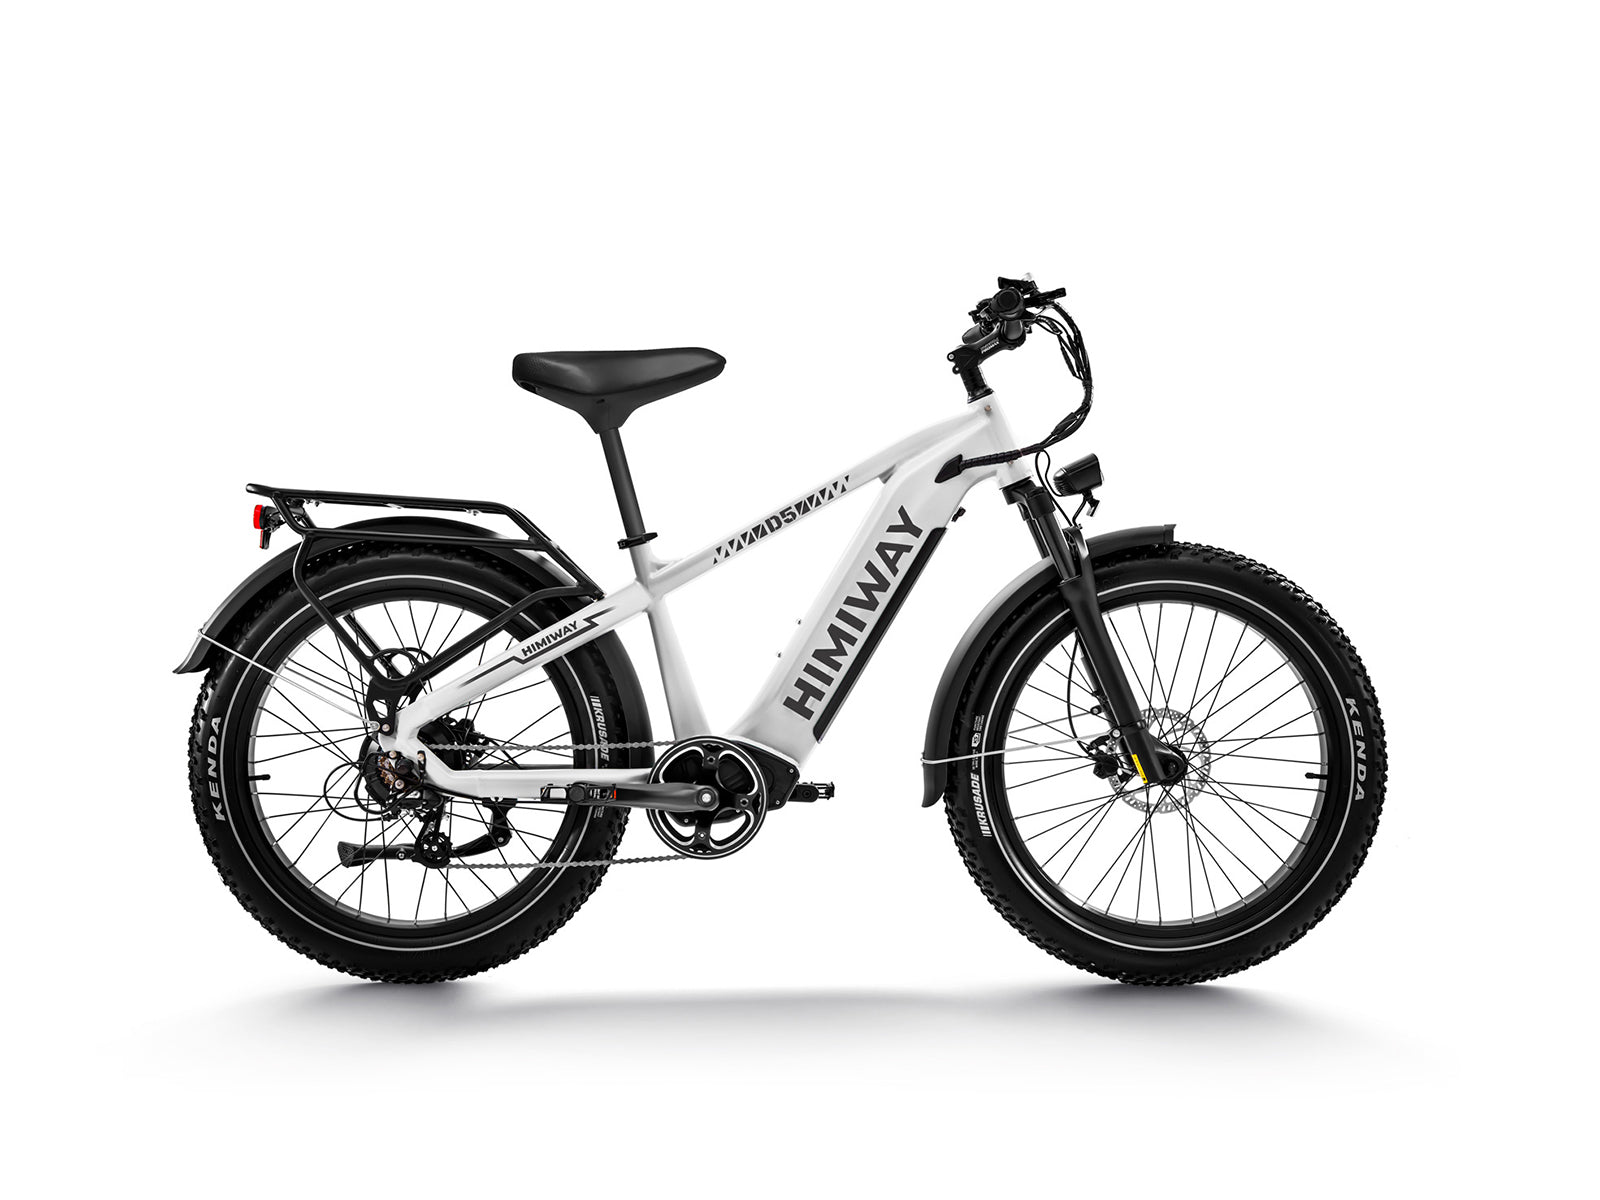 Premium All-terrain Electric Fat Bike